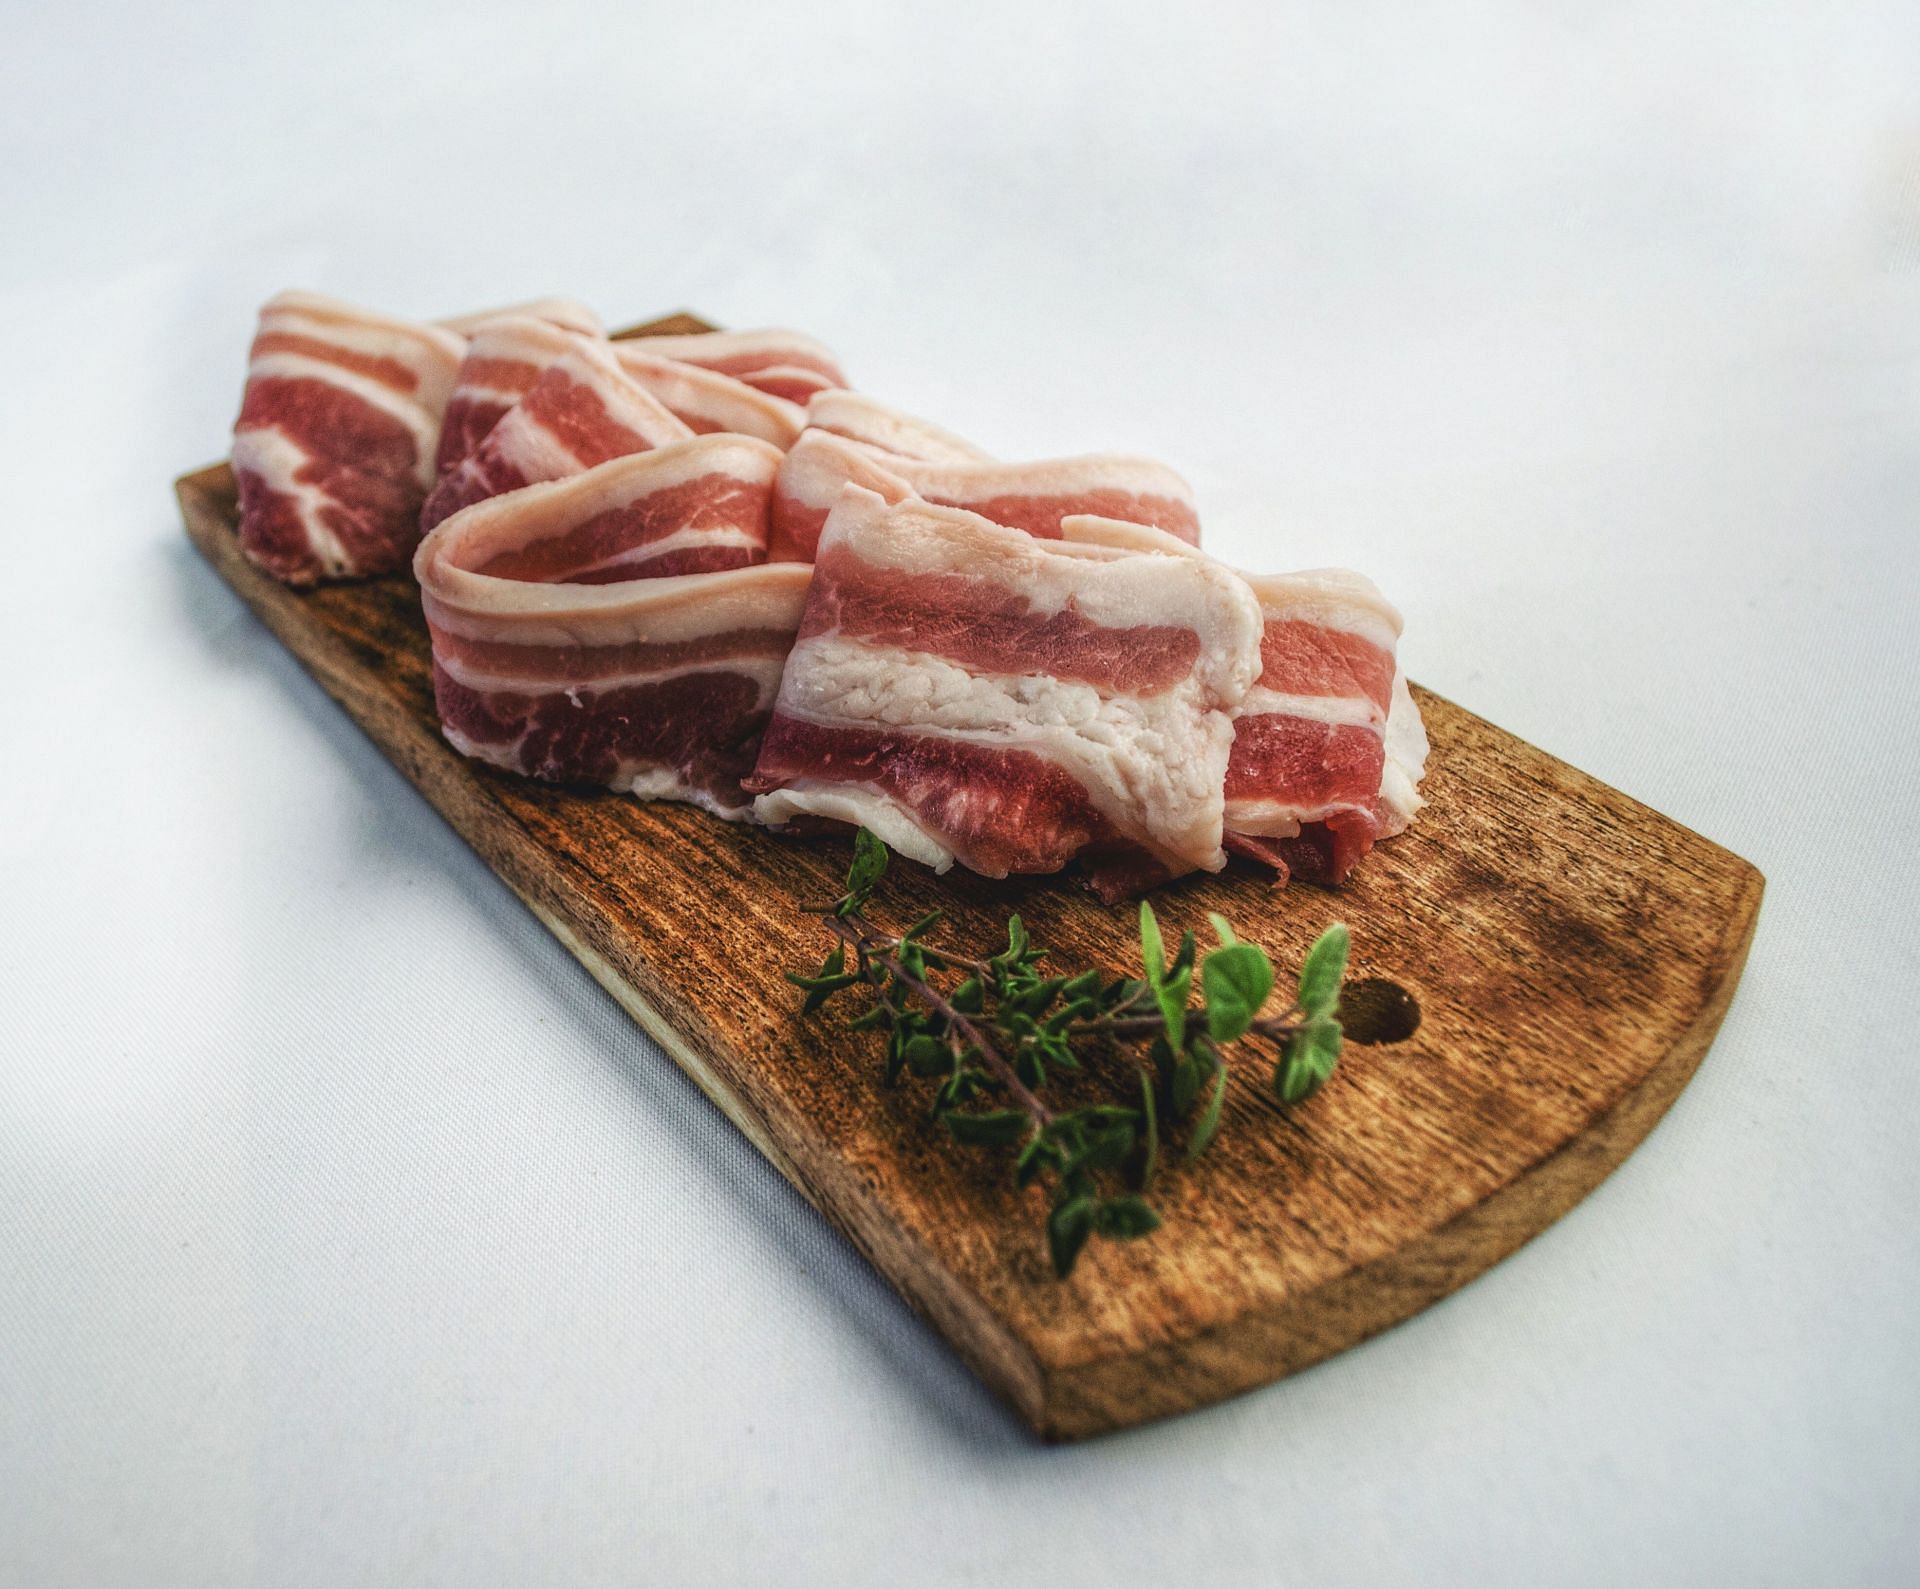 Calories in Bacon: Turkey bacon has comparatively less calories. (Image via Pexels/ Nicolas Postigiloni)